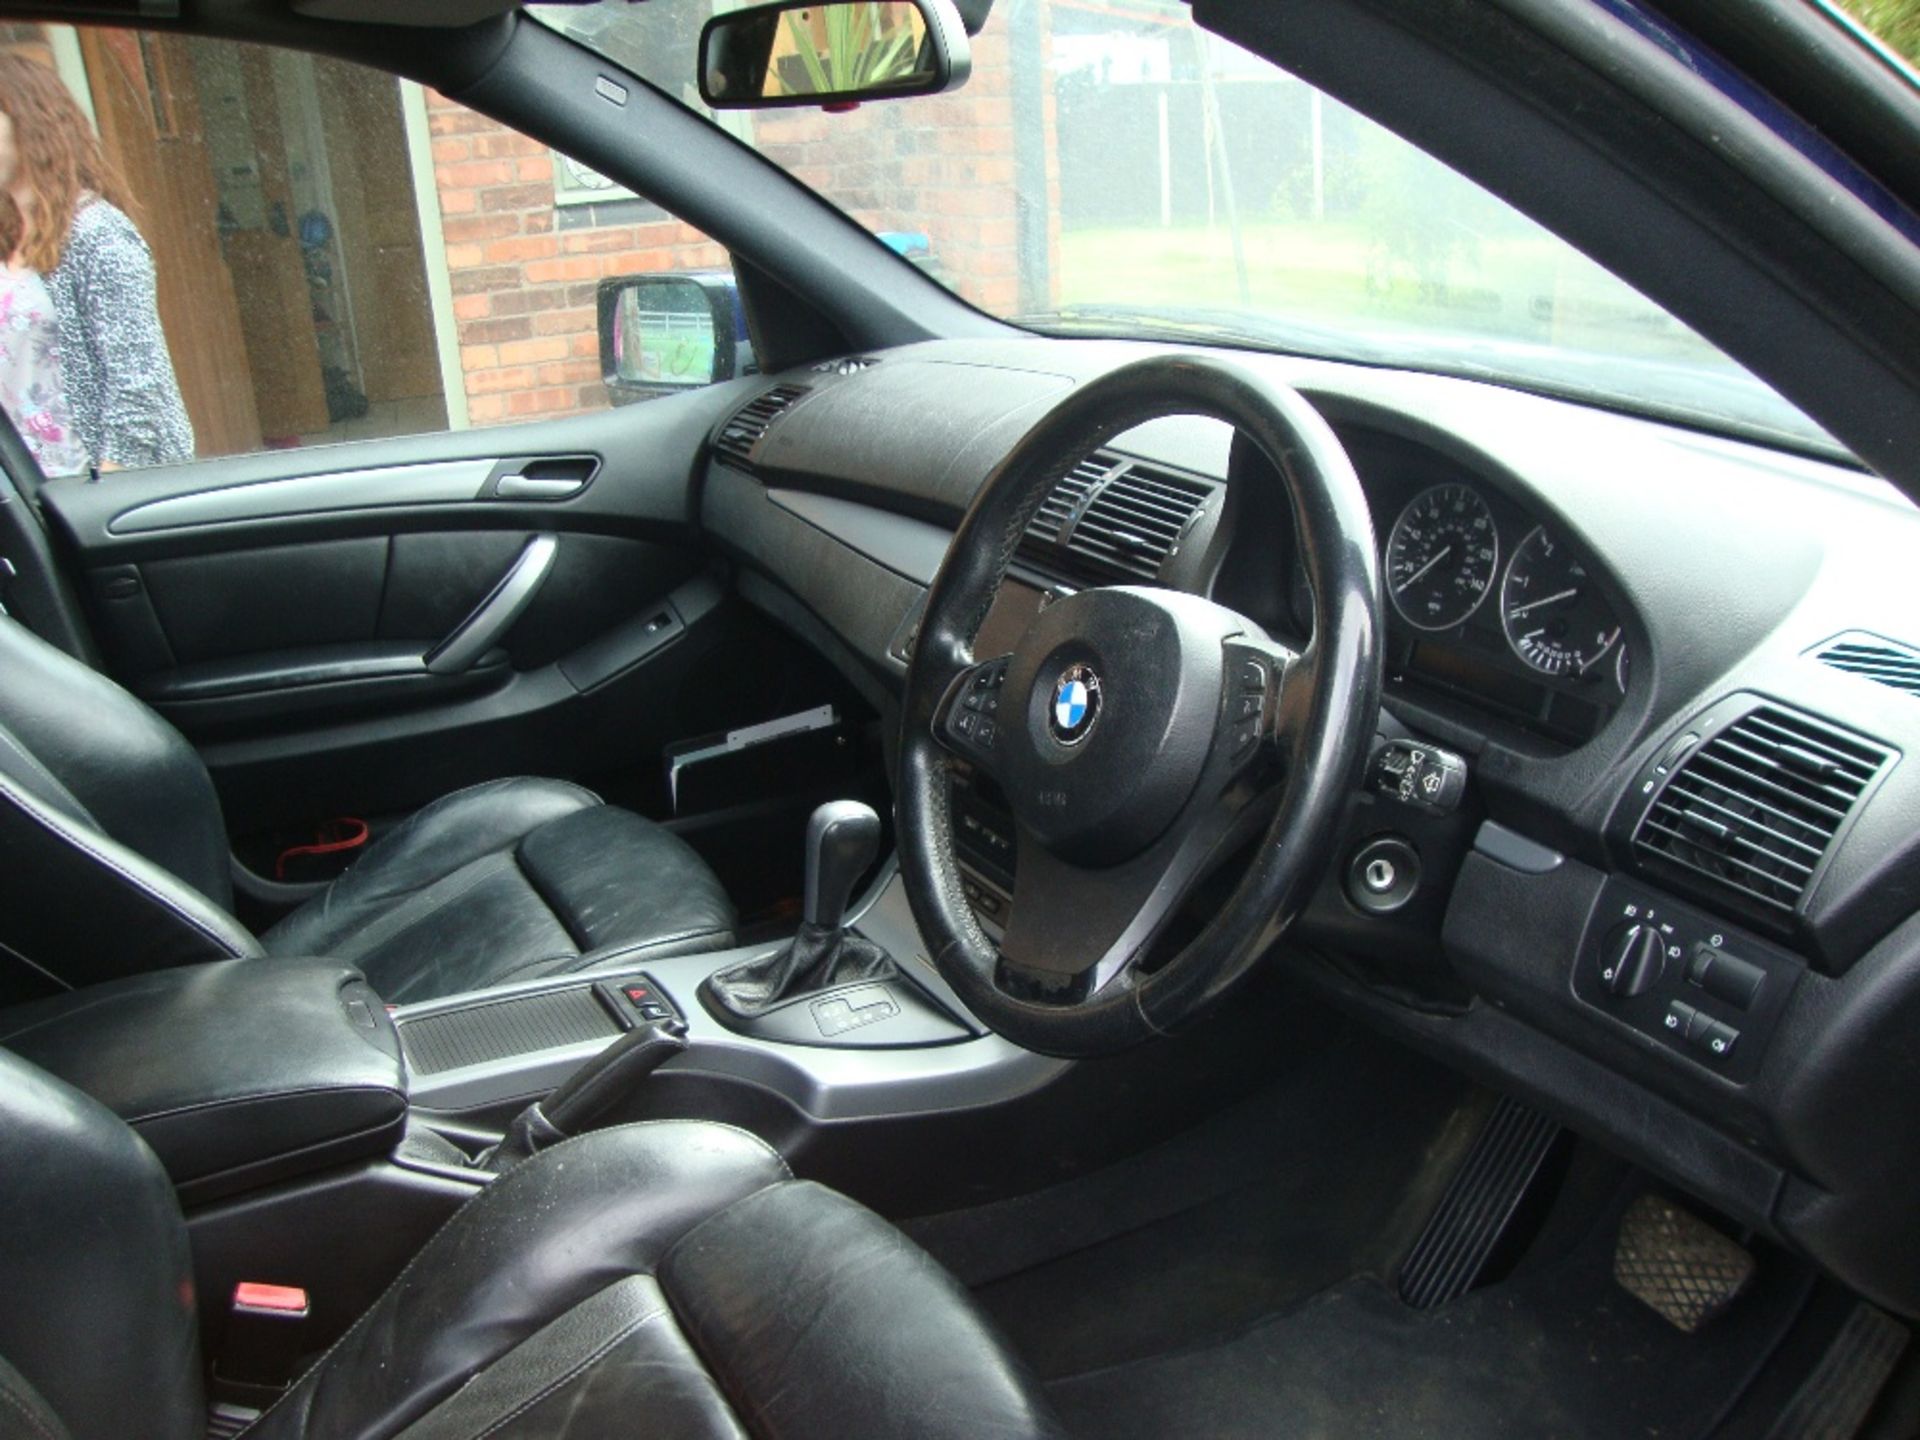 BMW X5 DIESEL CAR - Image 4 of 6